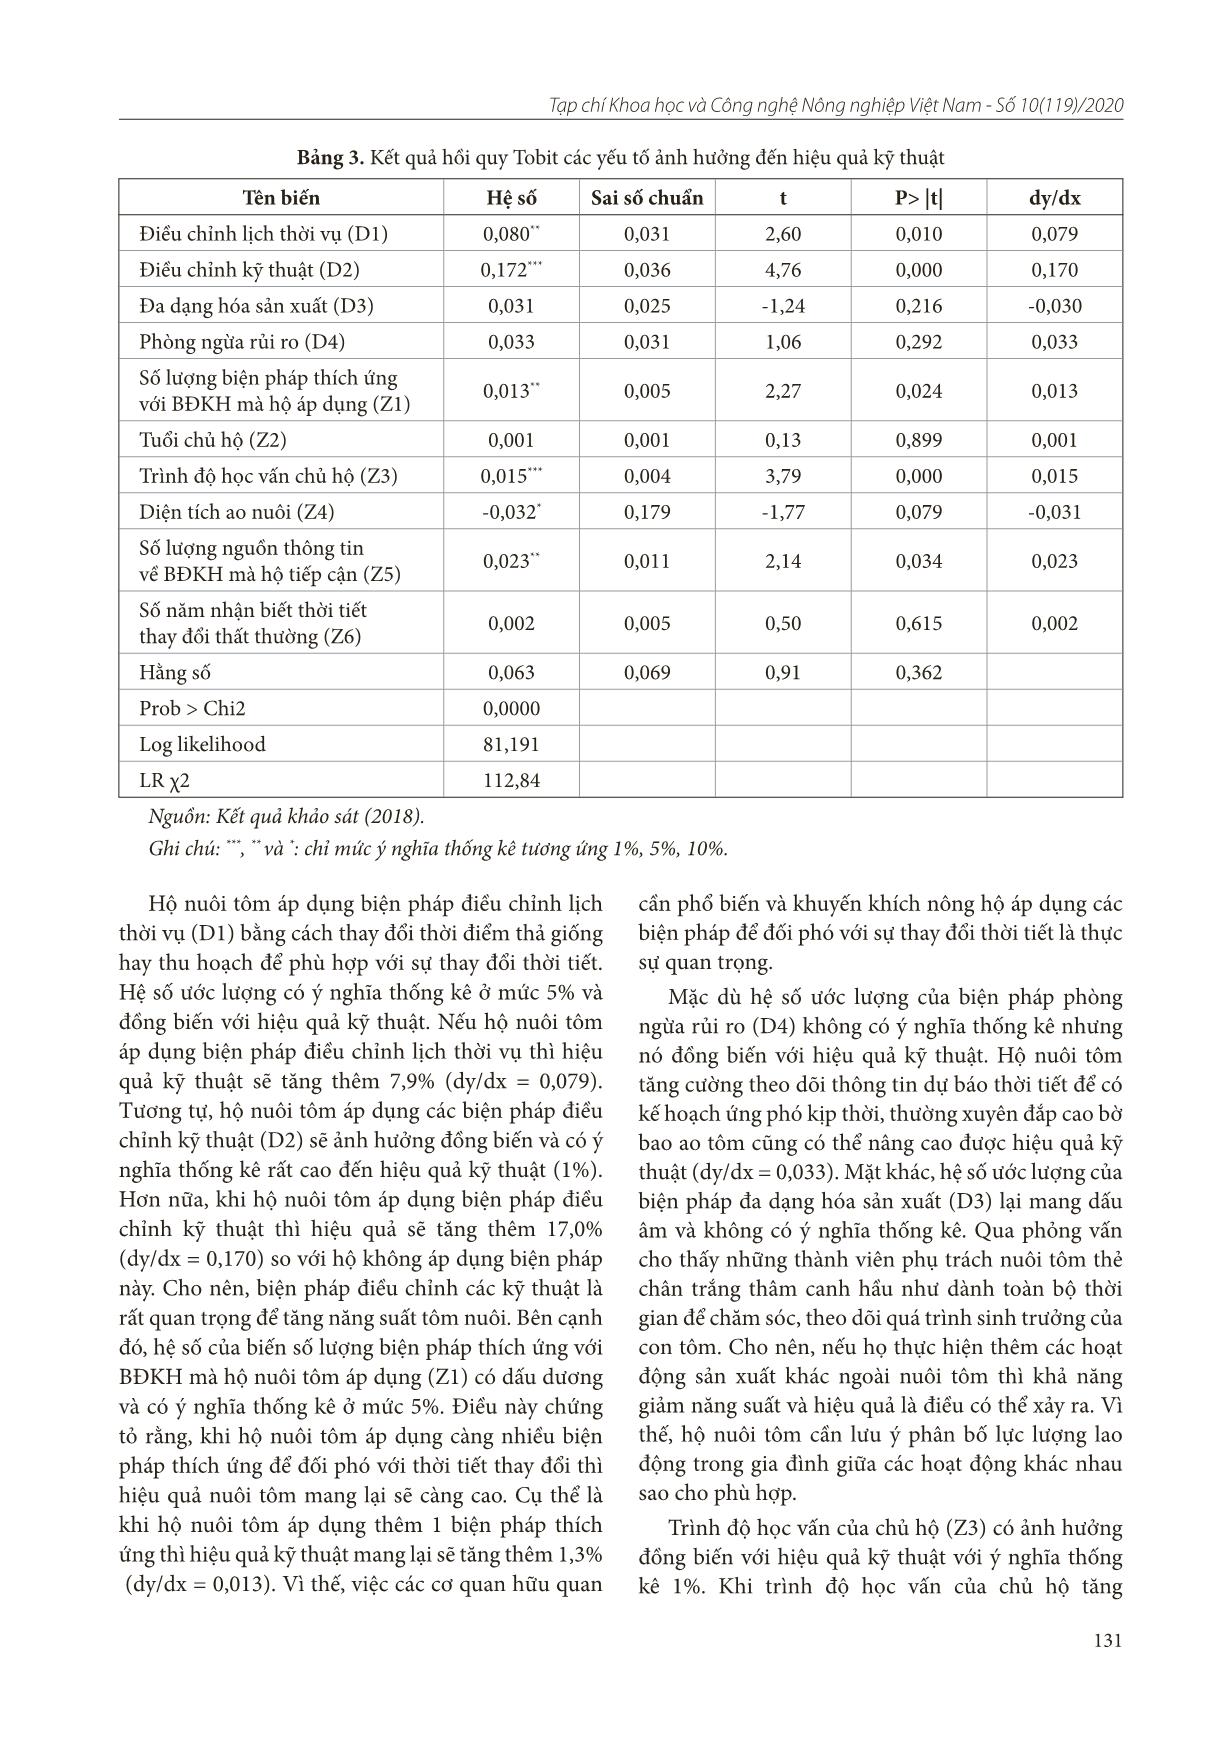 Phân tích ảnh hưởng của các biện pháp thích ứng biến đổi khí hậu đến hiệu quả kỹ thuật của hộ nuôi tôm thẻ chân trắng tại tỉnh Bến Tre trang 5